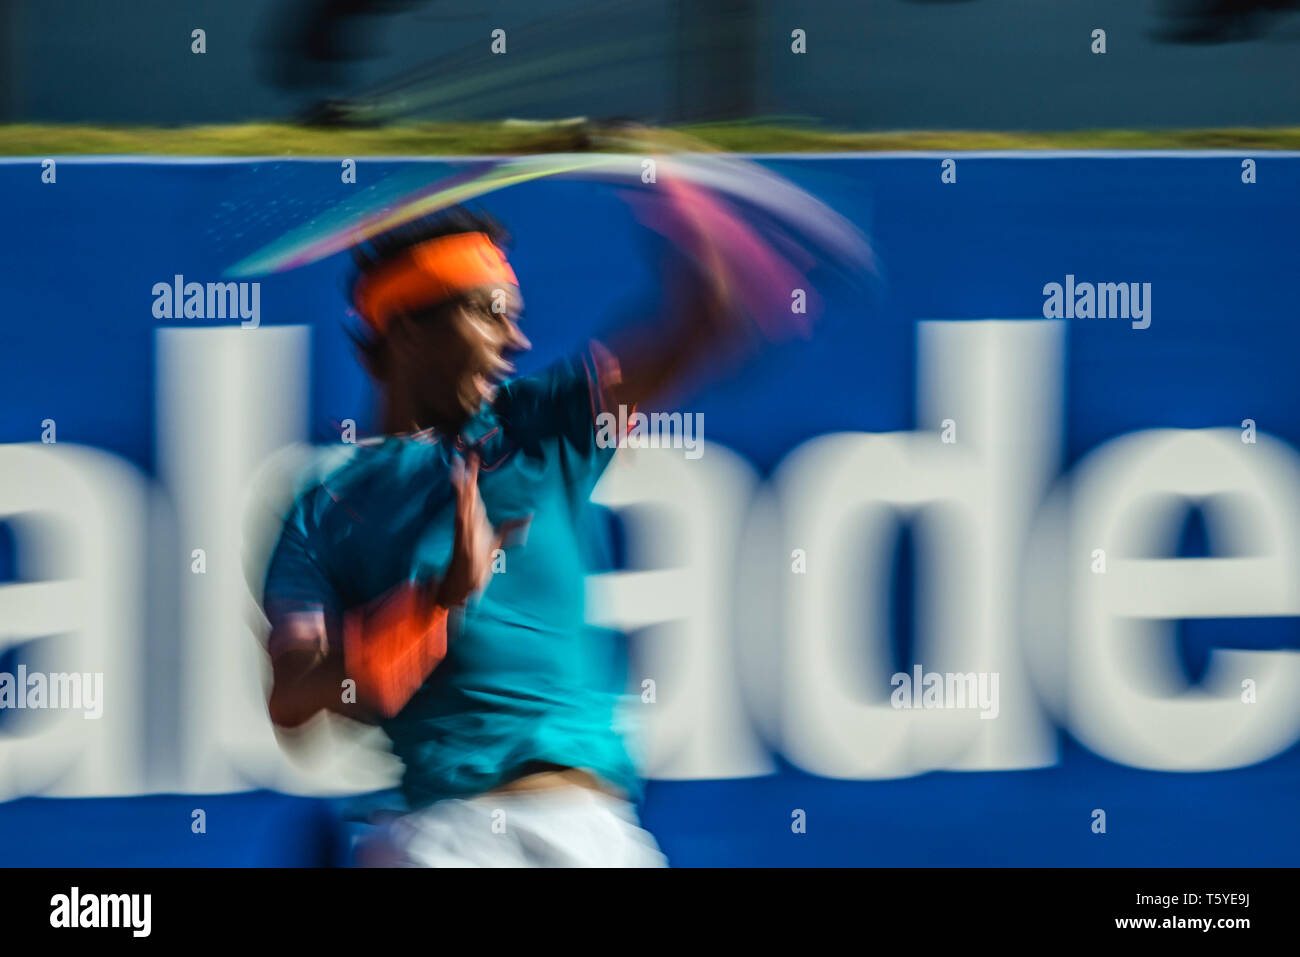 Barcellona, Spagna. 27 apr 2019. RAPHAEL NADAL (ESP) restituisce la palla a Dominic Thiem (AUT) durante il giorno 6 del "Barcelona Open Banc Sabadell' 2019. Thiem sconfitto Nadal 6-4, 6-4 per raggiungere finali Credito: Matthias Oesterle/Alamy Live News Foto Stock